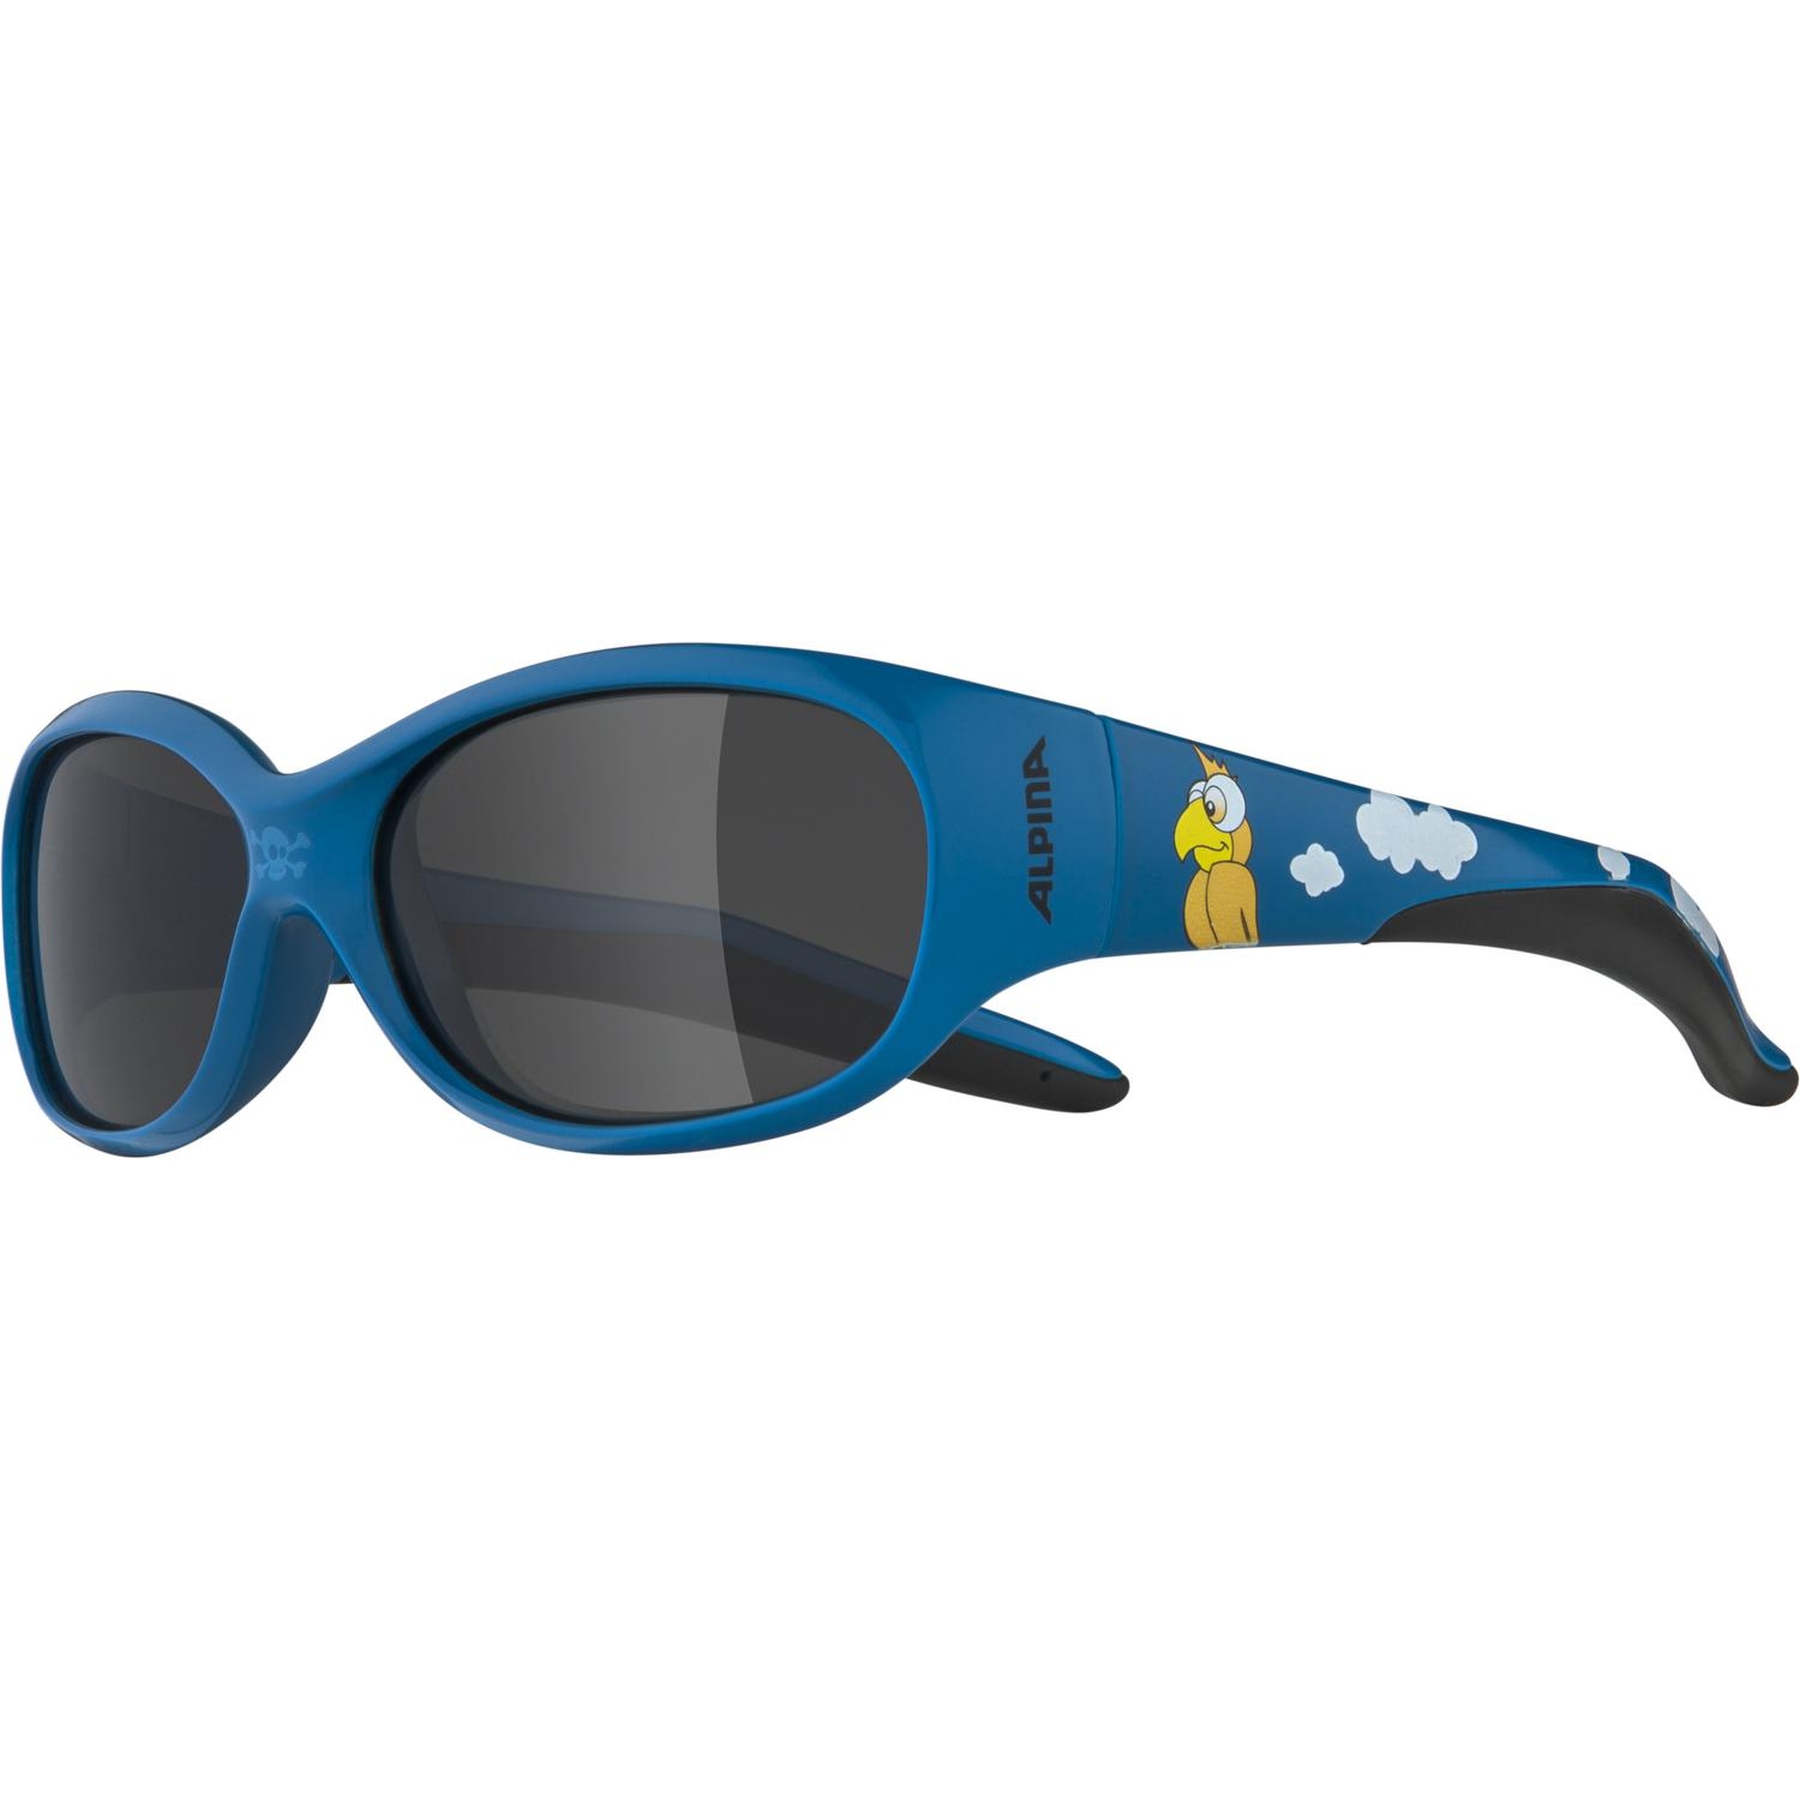 Produktbild von Alpina Flexxy Kids Kinderbrille - blue pirat gloss/Ceramic Black